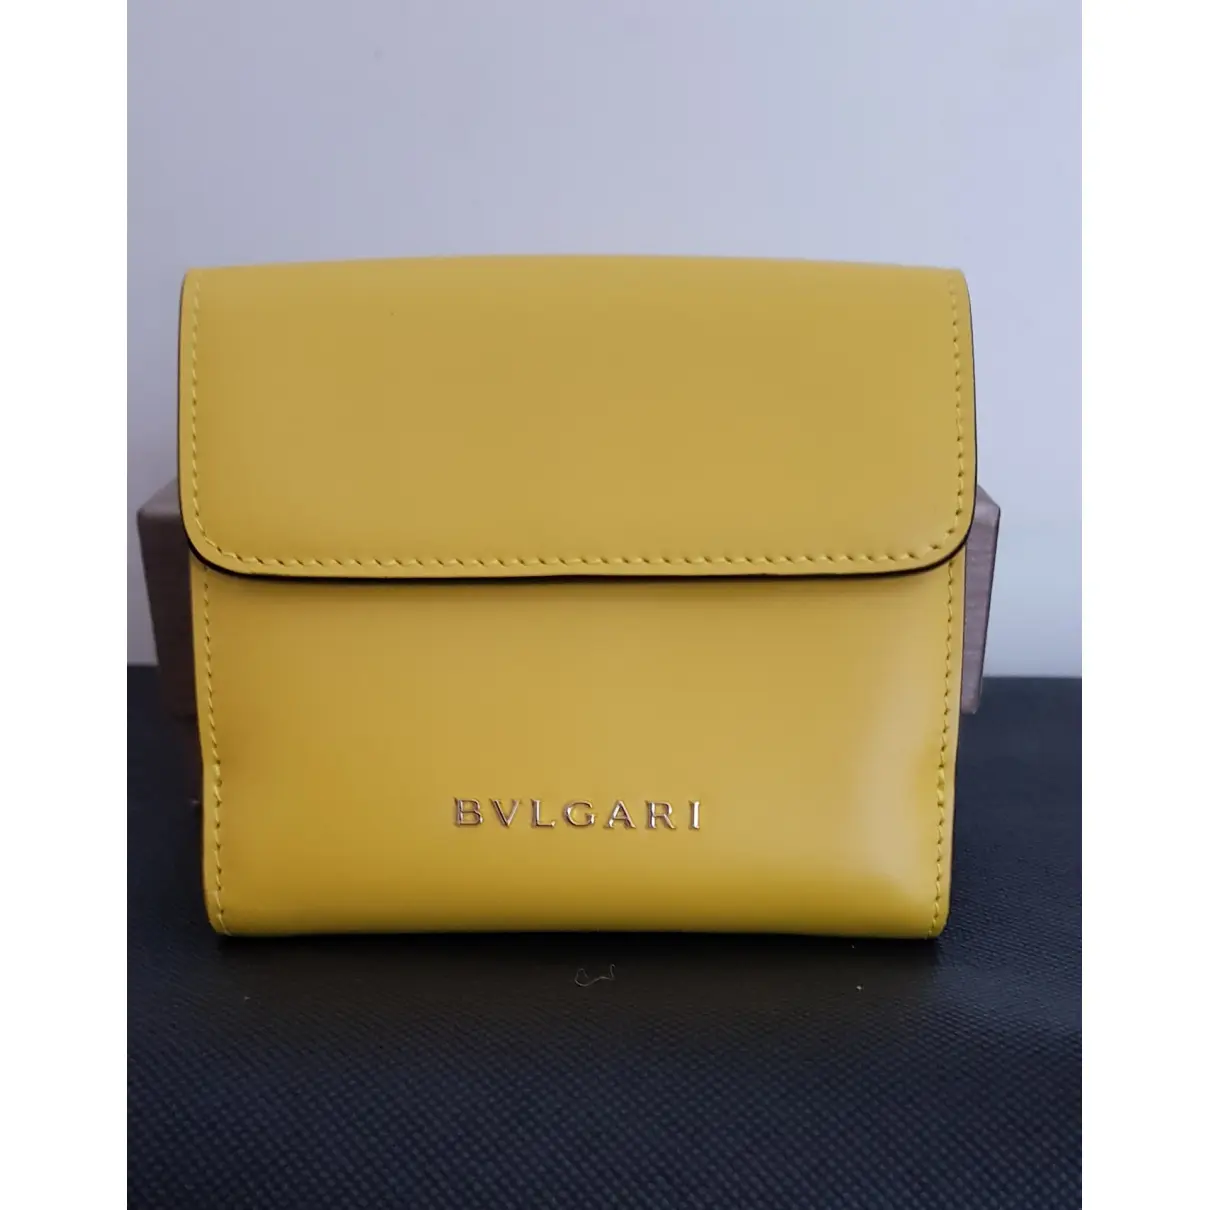 Buy Bvlgari Serpenti leather wallet online